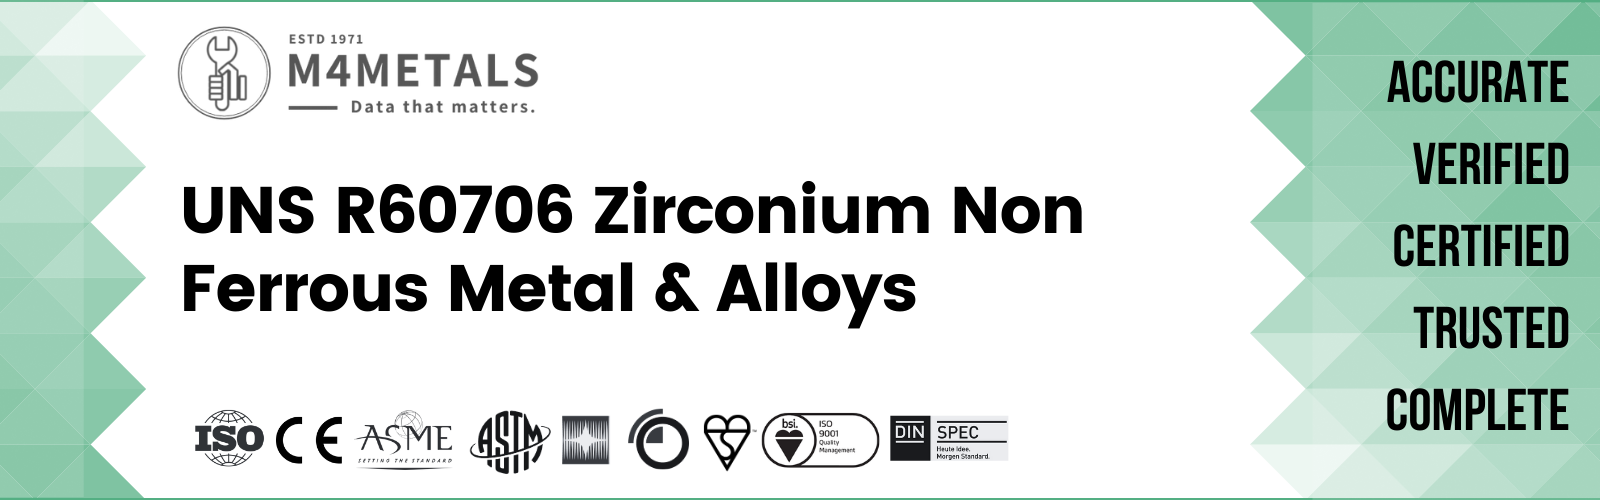 Zirconium UNS R60706